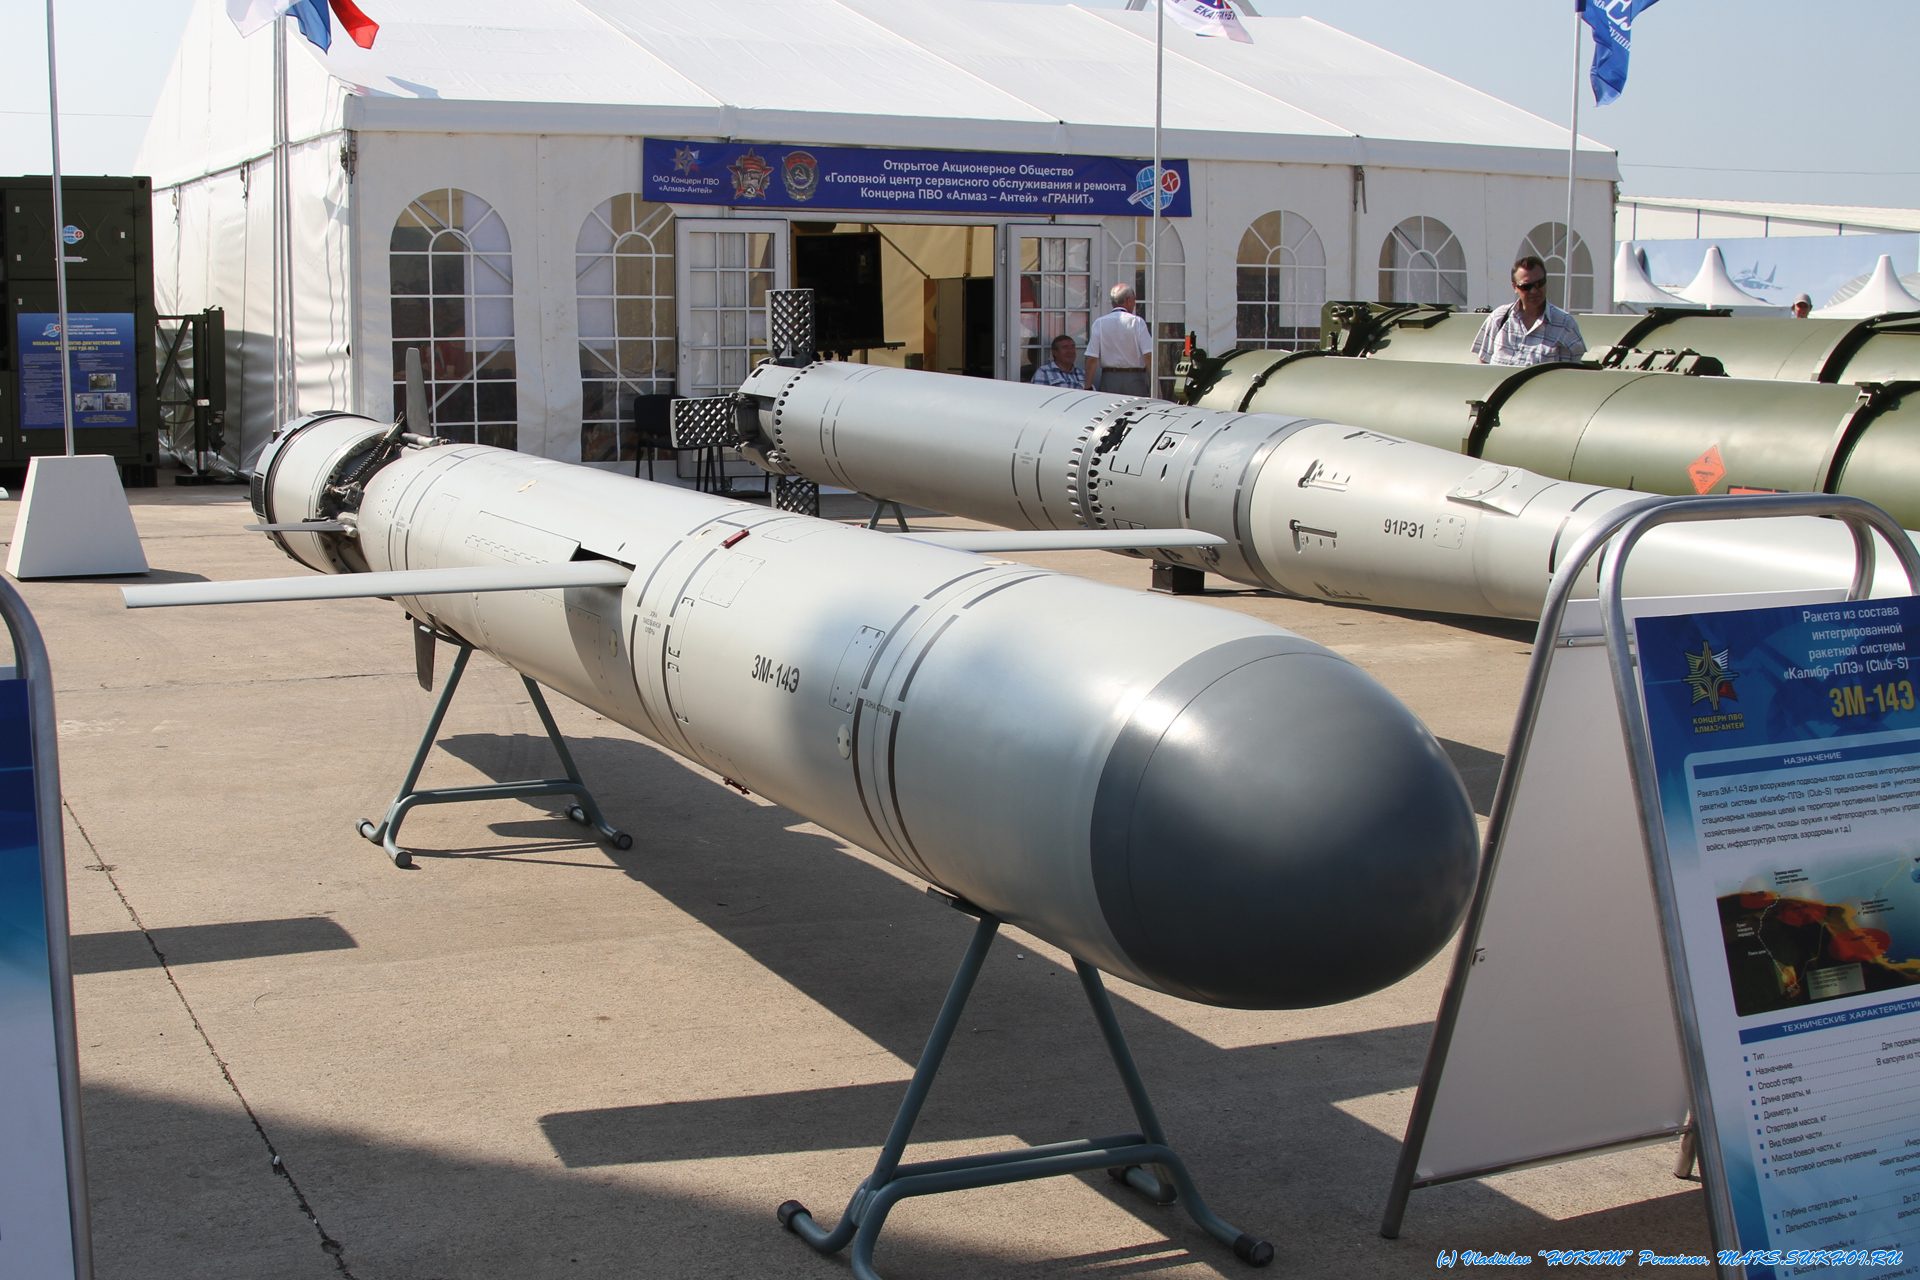 Ракеты 3М-14 Э комплекса "Калибр", предназначенные для поражения наземных целей (демонстрационный макет) и ракета-торпеда 91РЭ1